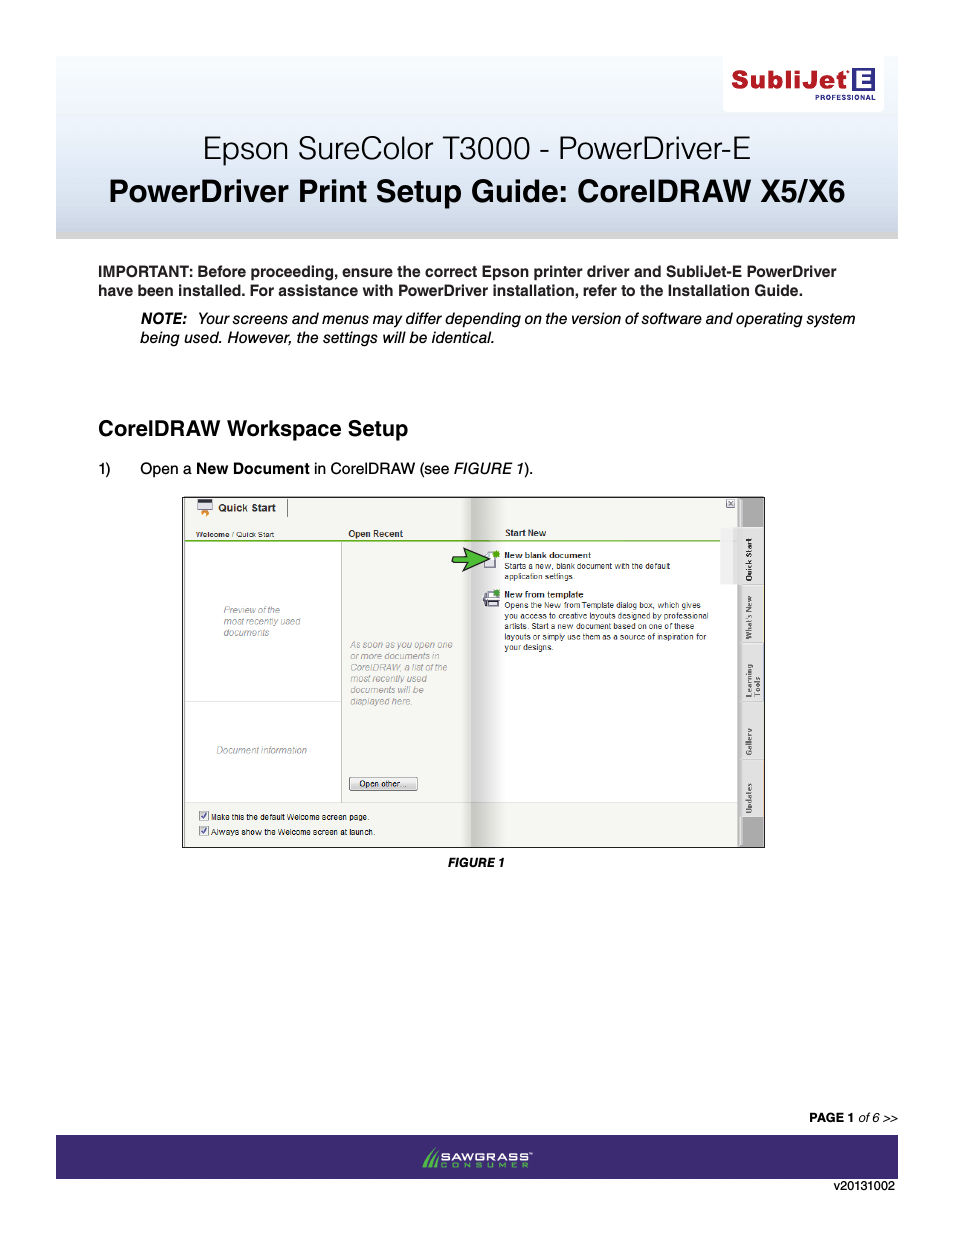 SubliJet E Epson SureColor T3000 (Power Driver Setup): Print & Setup Guide CorelDRAW X5 & X6